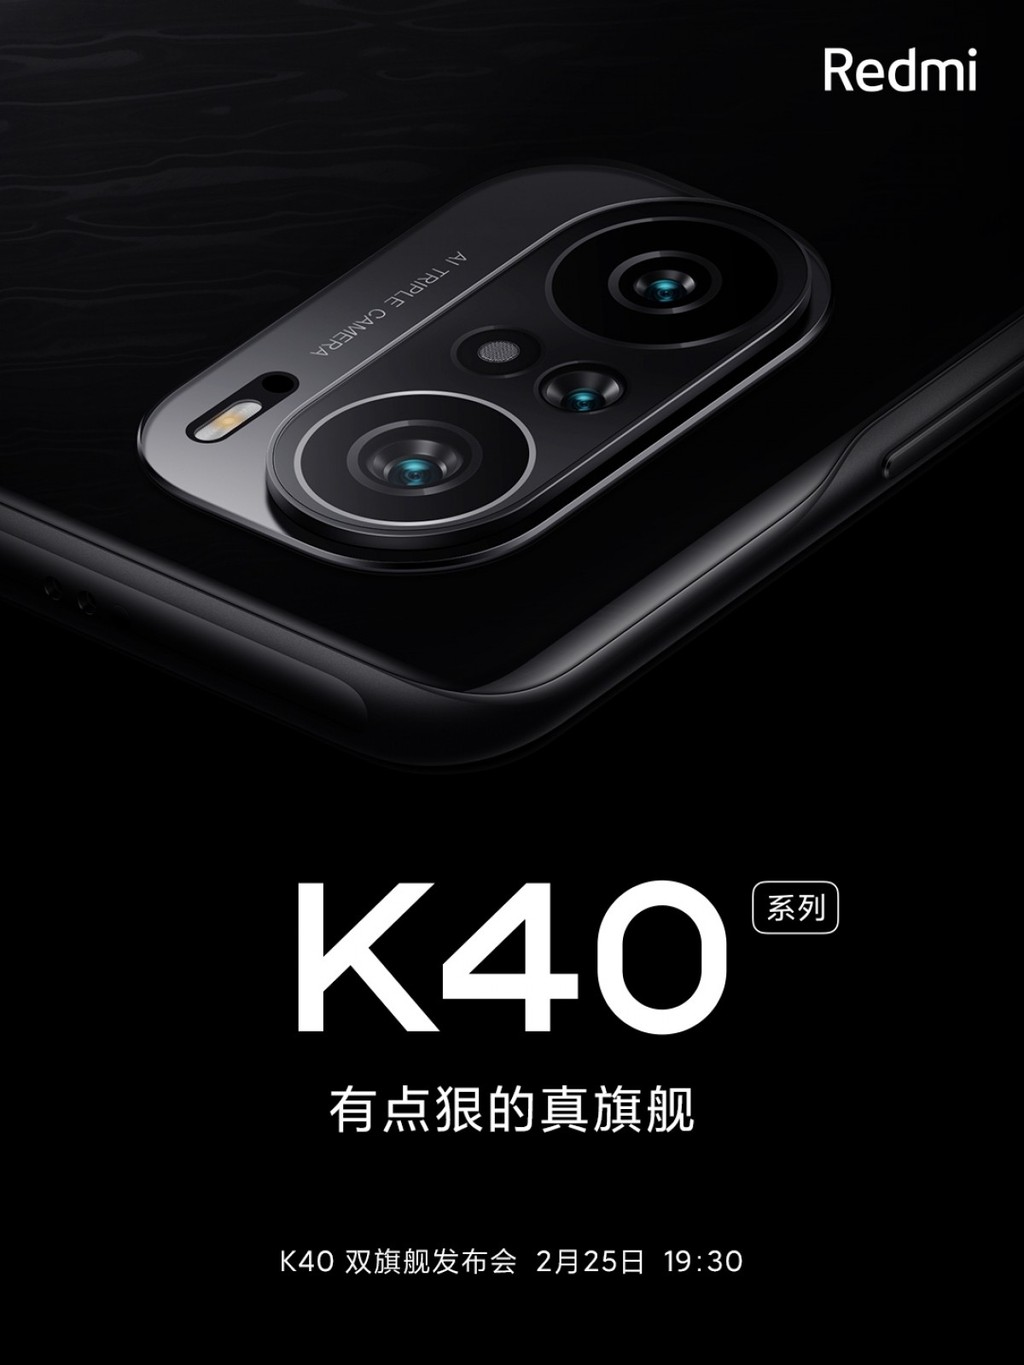 Redmi K40 sẽ có cụm ba camera đặc biệt ảnh 1